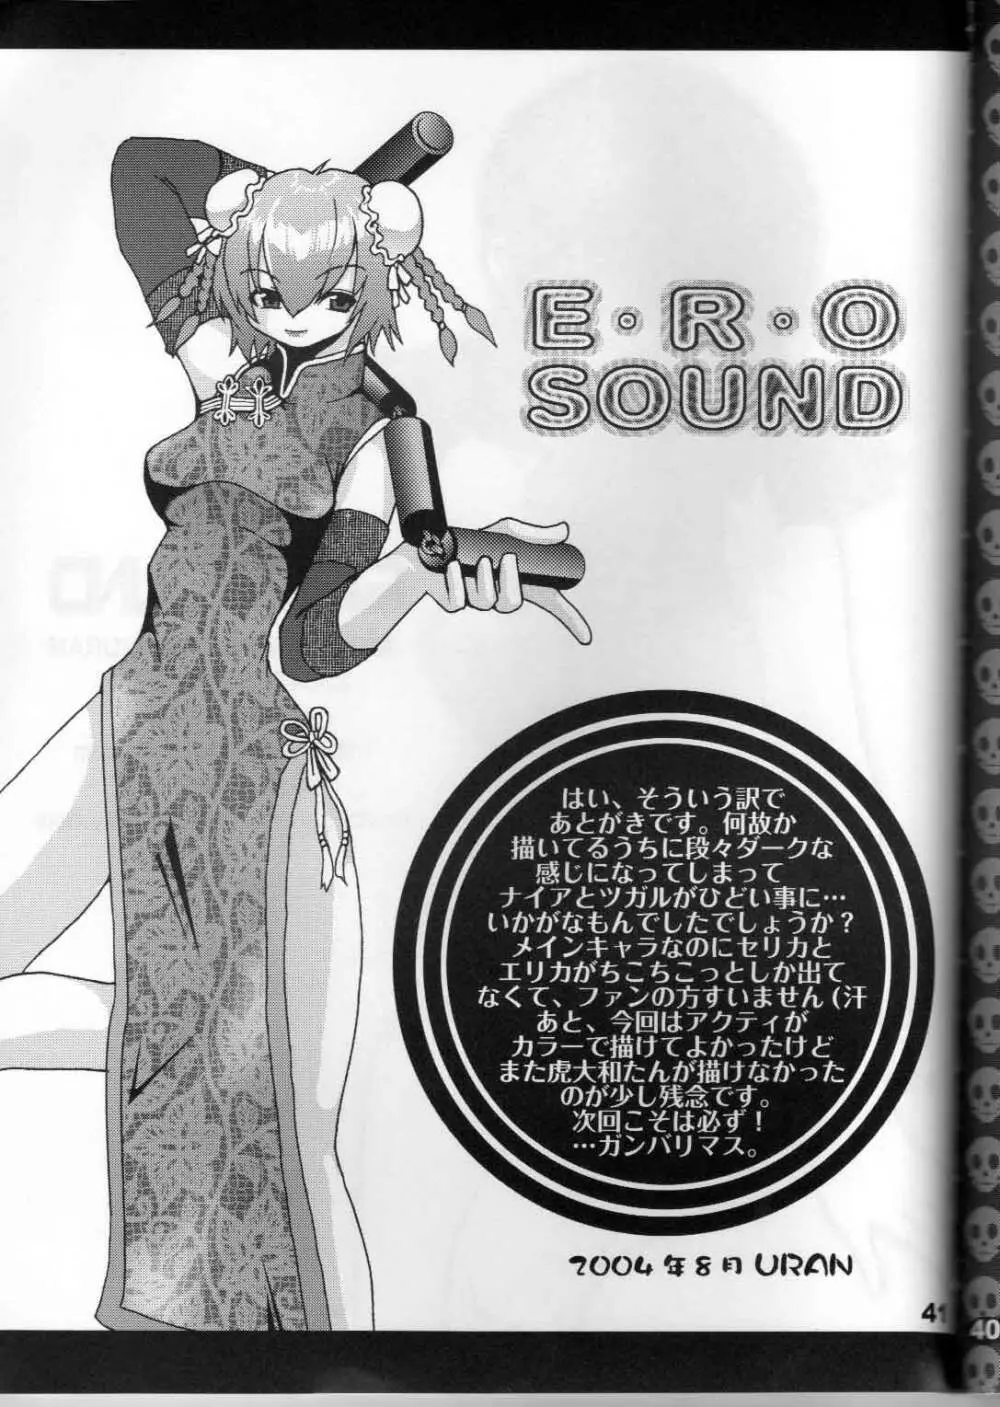 Ero Sound 42ページ